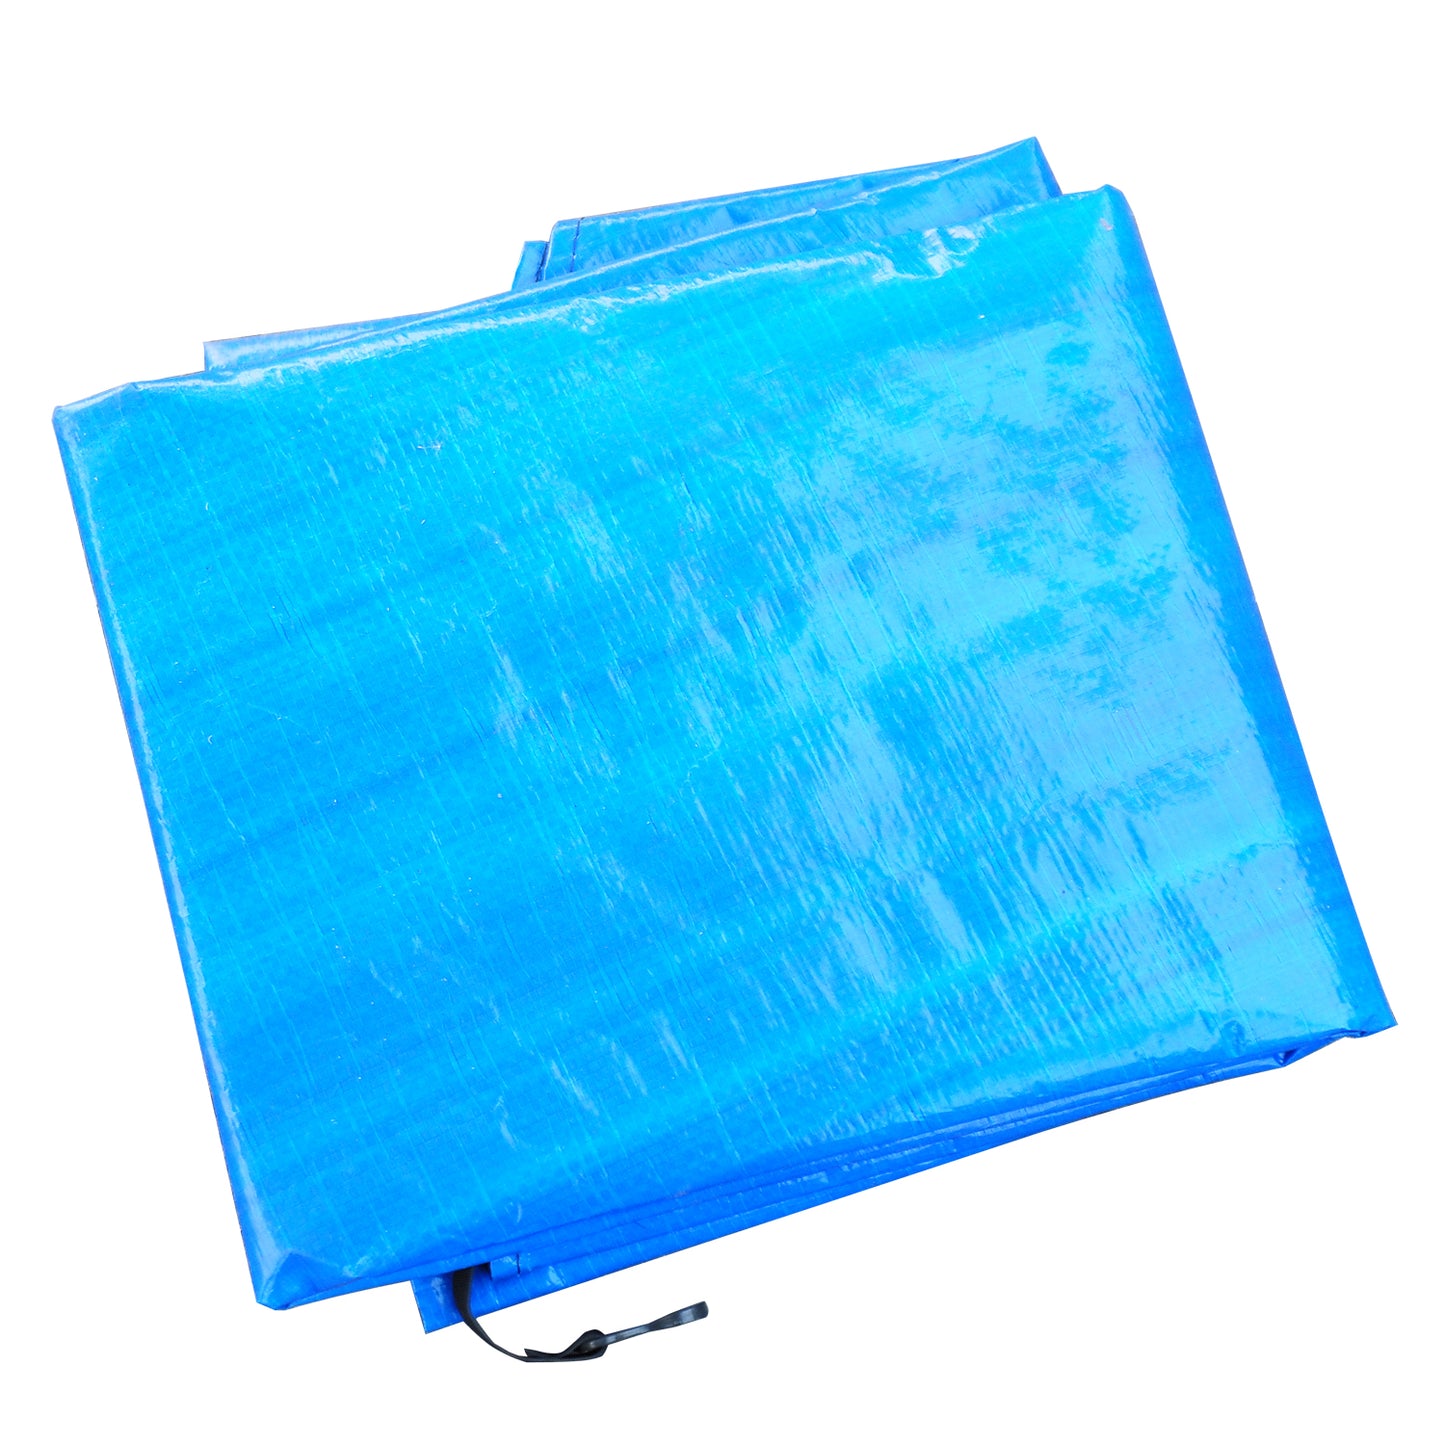 Homcom - Funda proteccion impermeable para cama elástica trampolines, diámetro ø 366cm, color azul